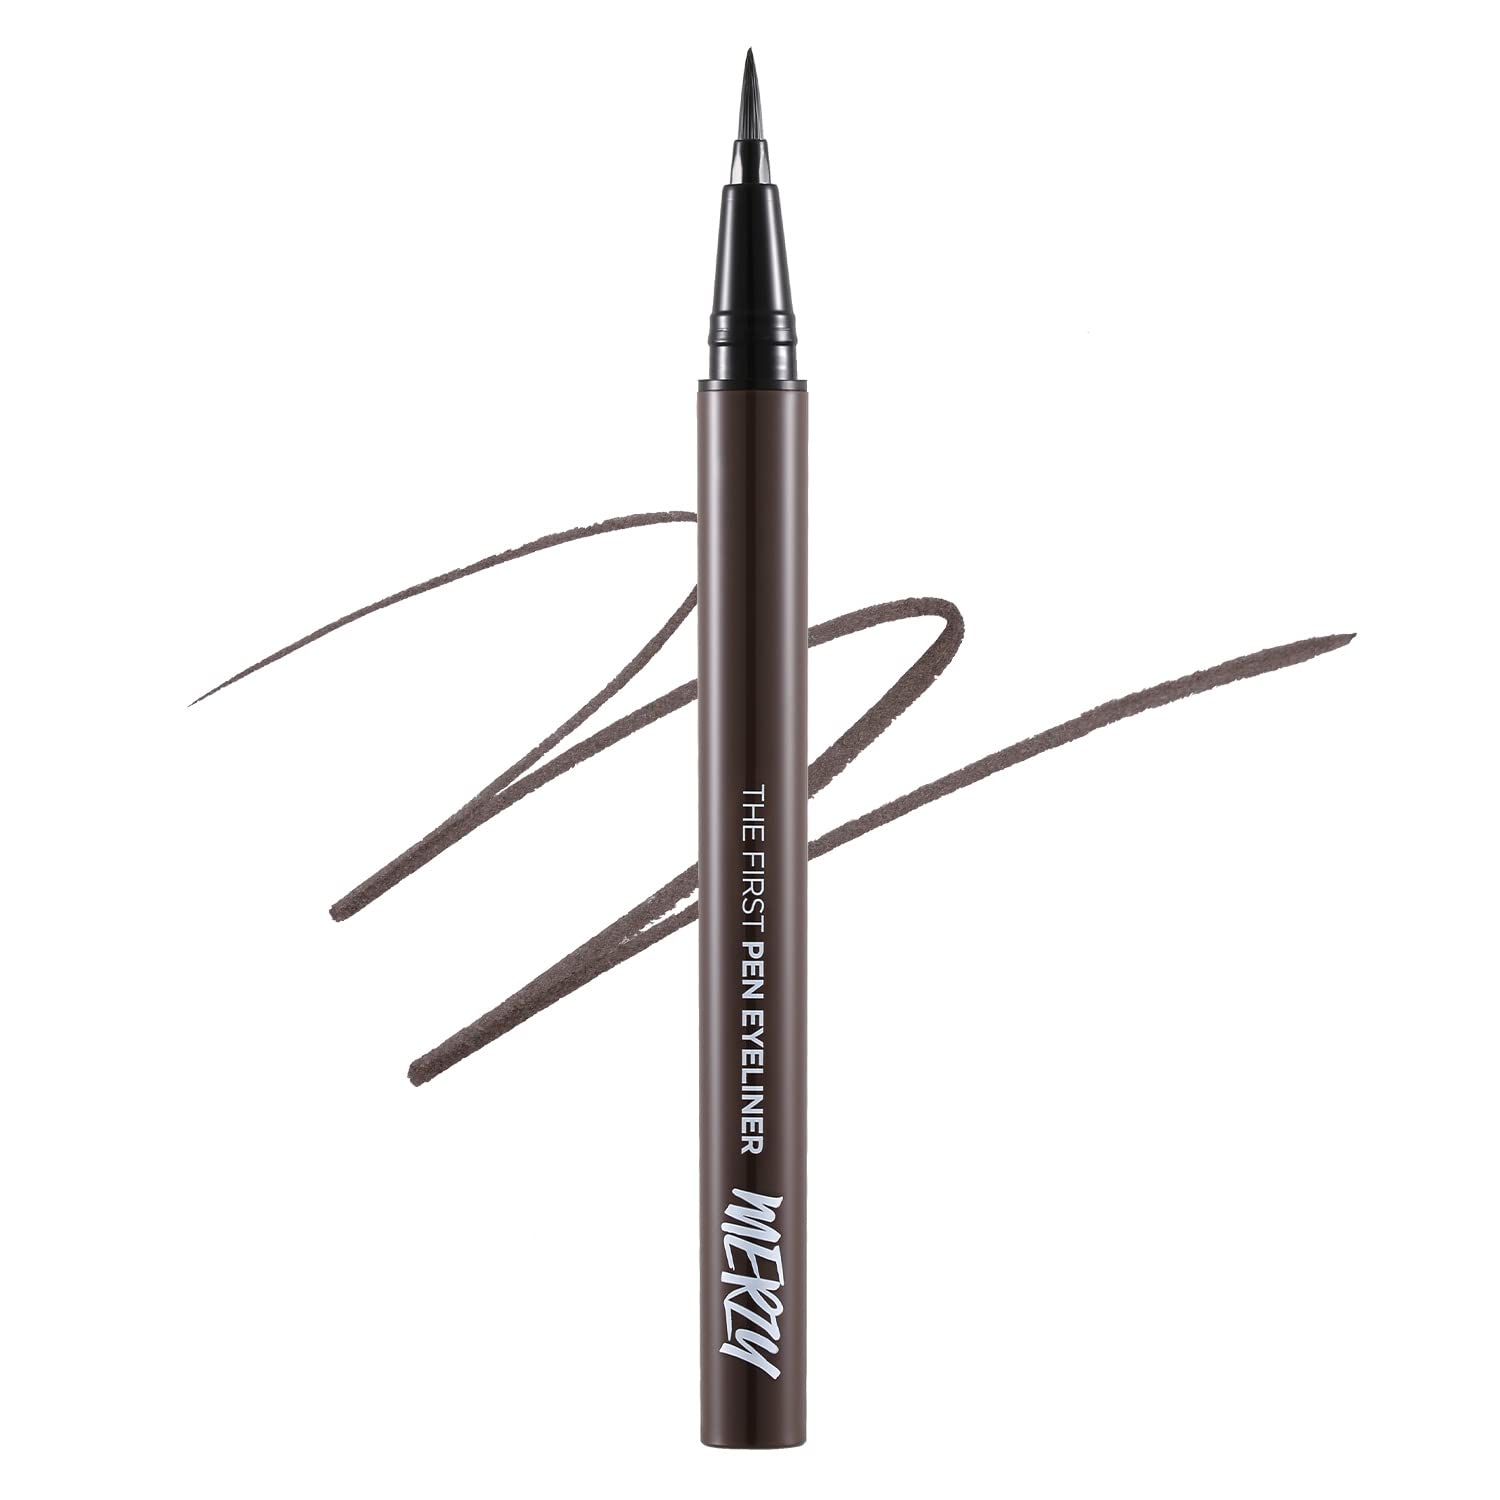 BY MERZY The First Pen Liquid Eye Liner | Waterproof Eyeliner, Long Lasting, Smudge-Resistant, High-Intensity Color | (P2, Dark Brown, Brownie)